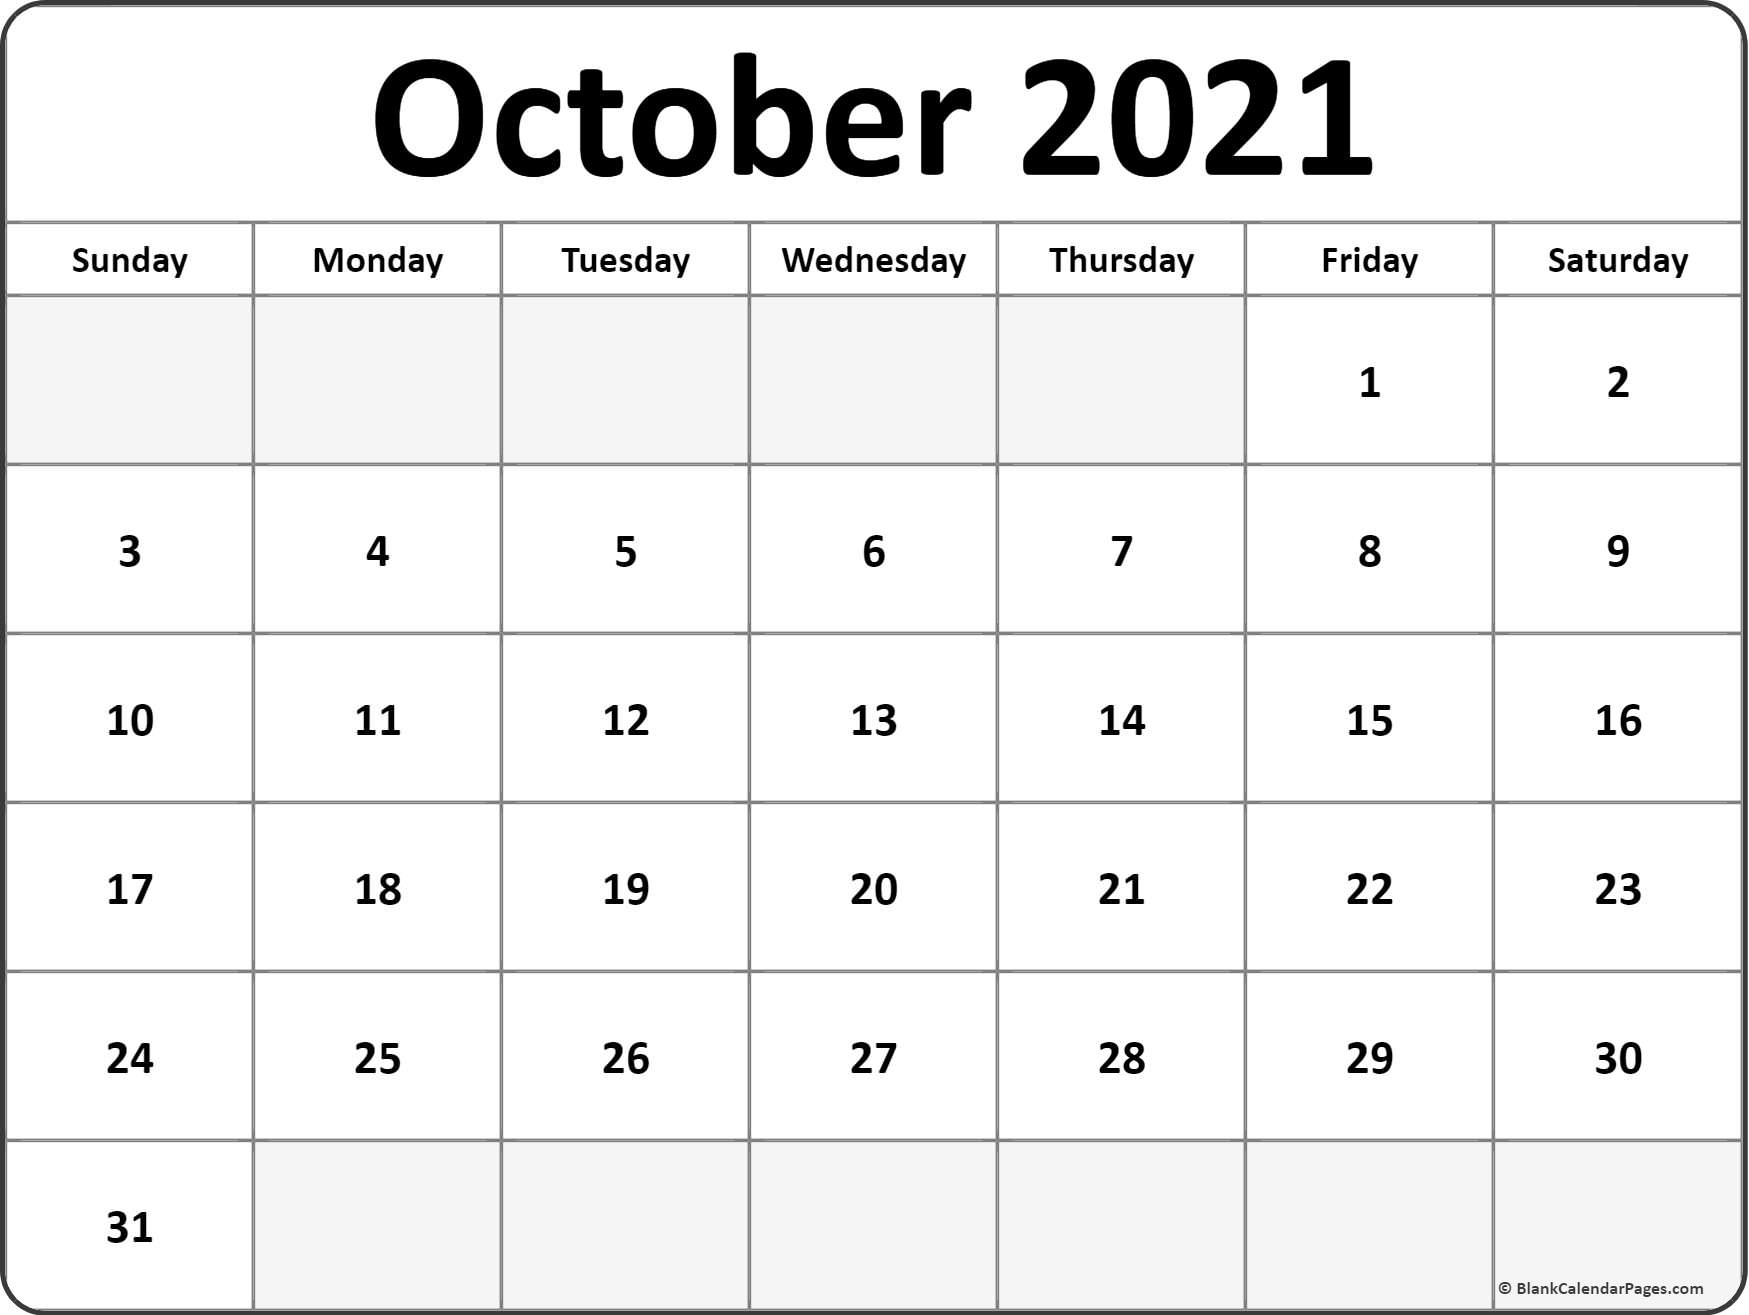 October 2021 Calendar | Free Printable Calendar Templates